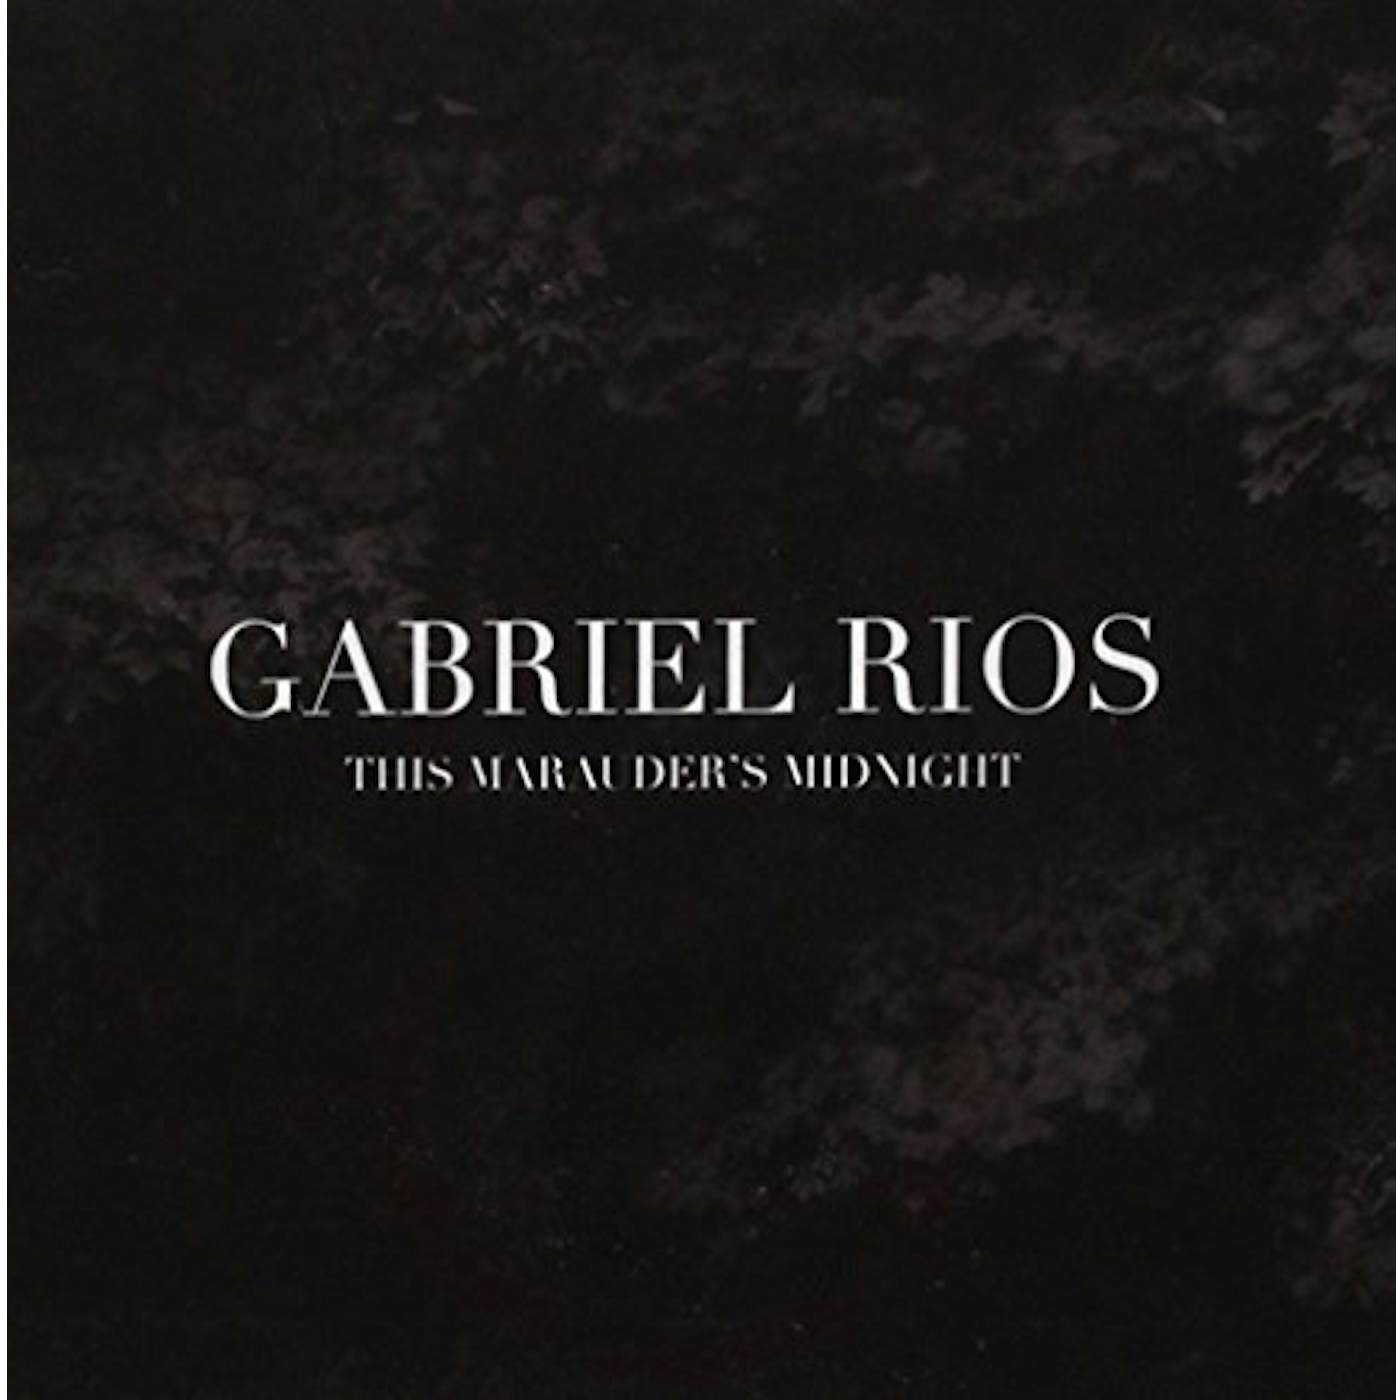 Gabriel Rios THIS MARAUDER'S MIDNIGHT CD